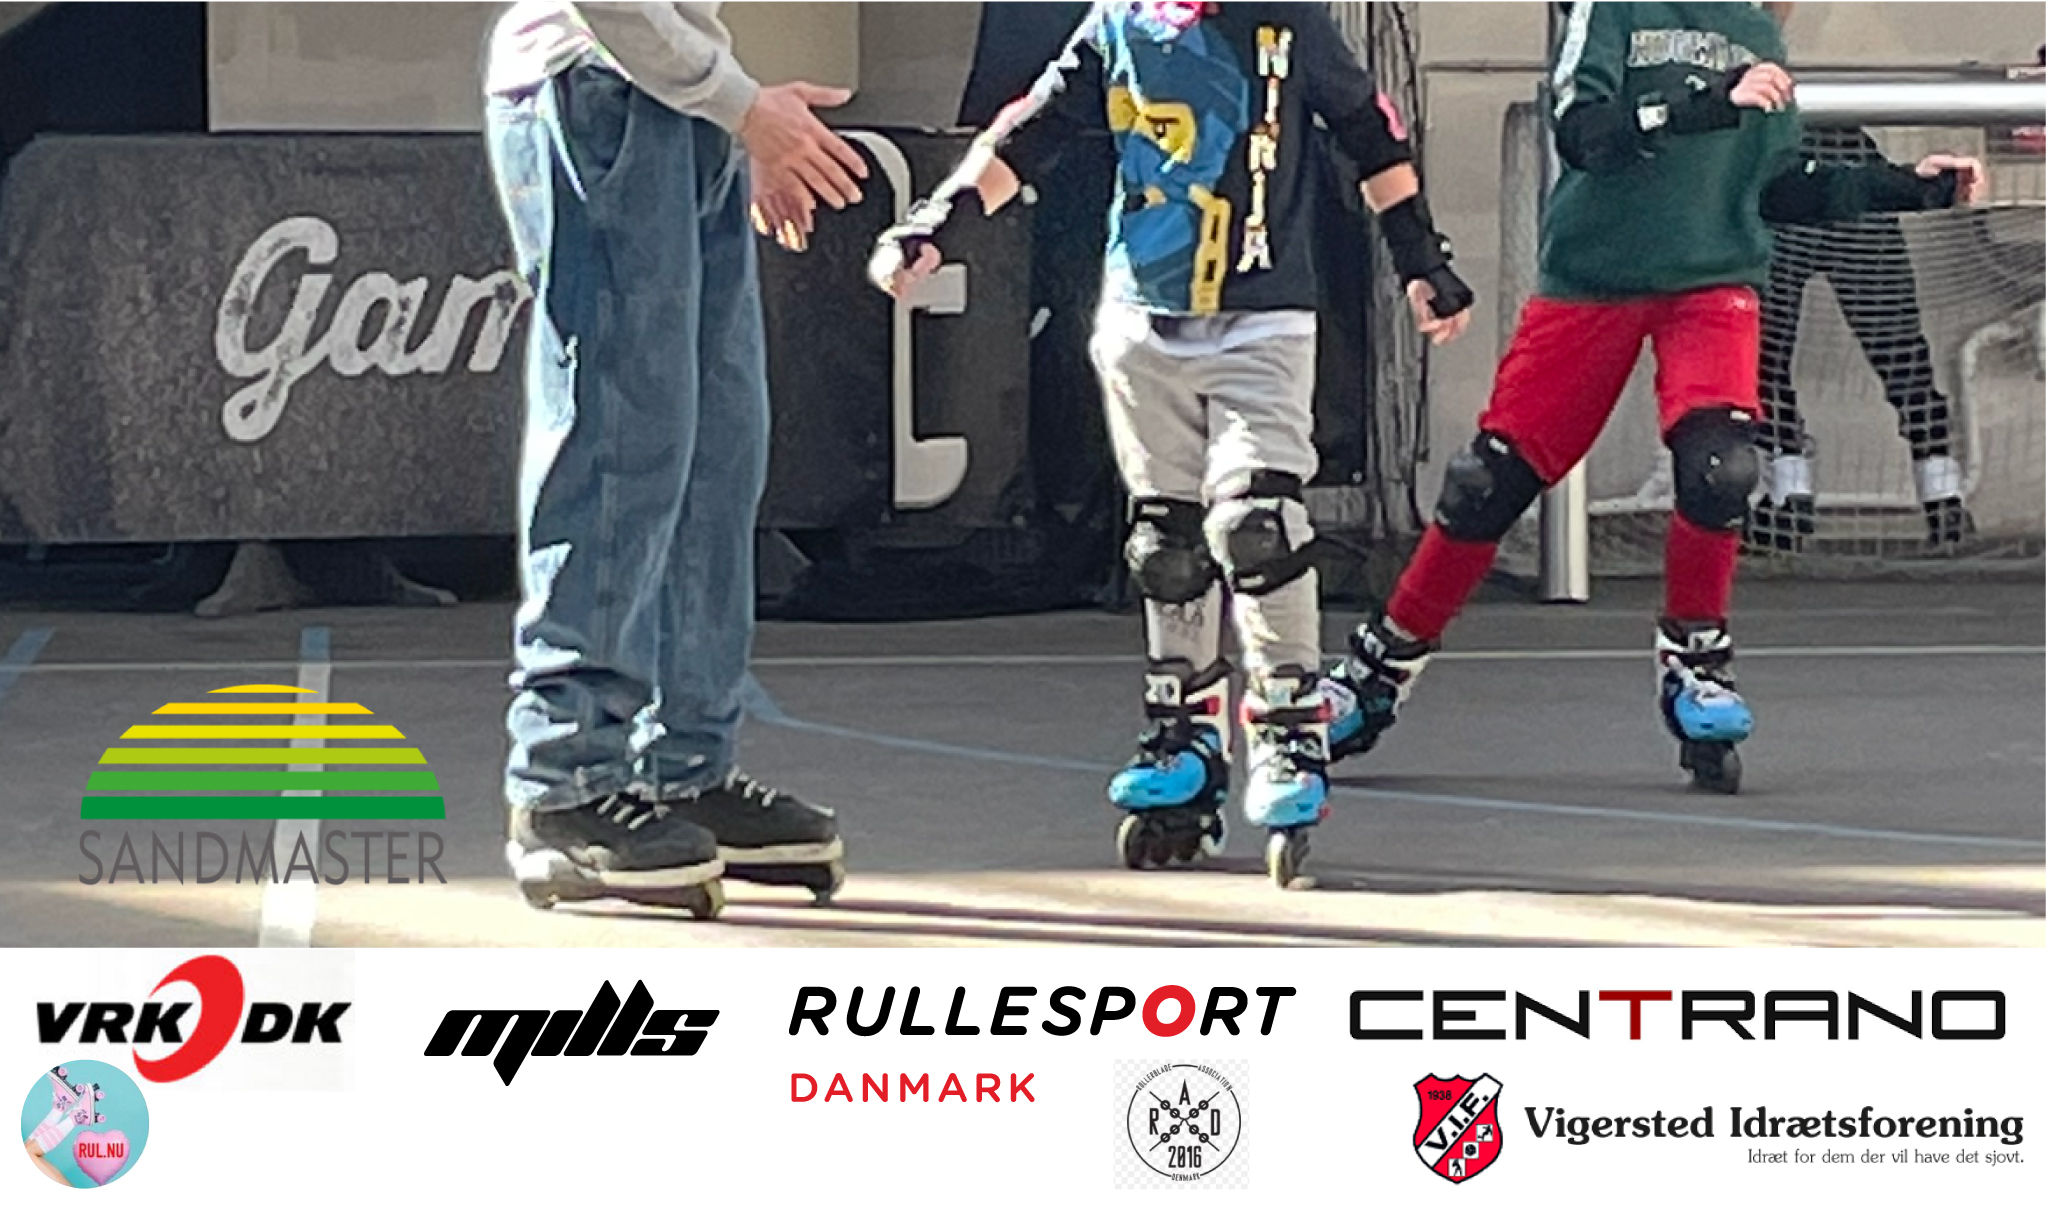 Afskedige Duchess ost Skatefestival - rulleskøjter, skateboard og løbehjul - Rullesport Danmark